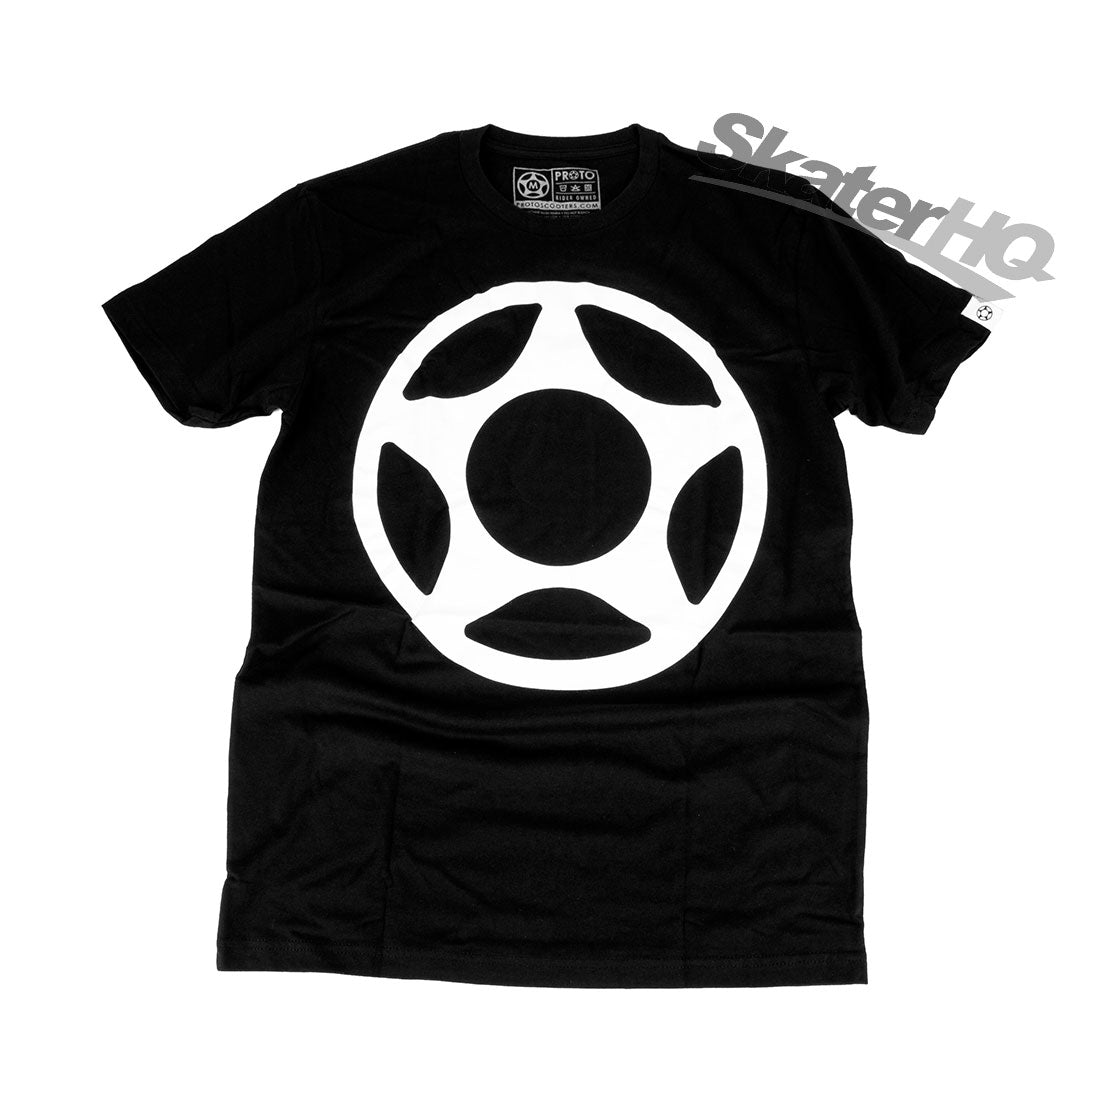 Proto Big Star Tee Black - Small Apparel Tshirts